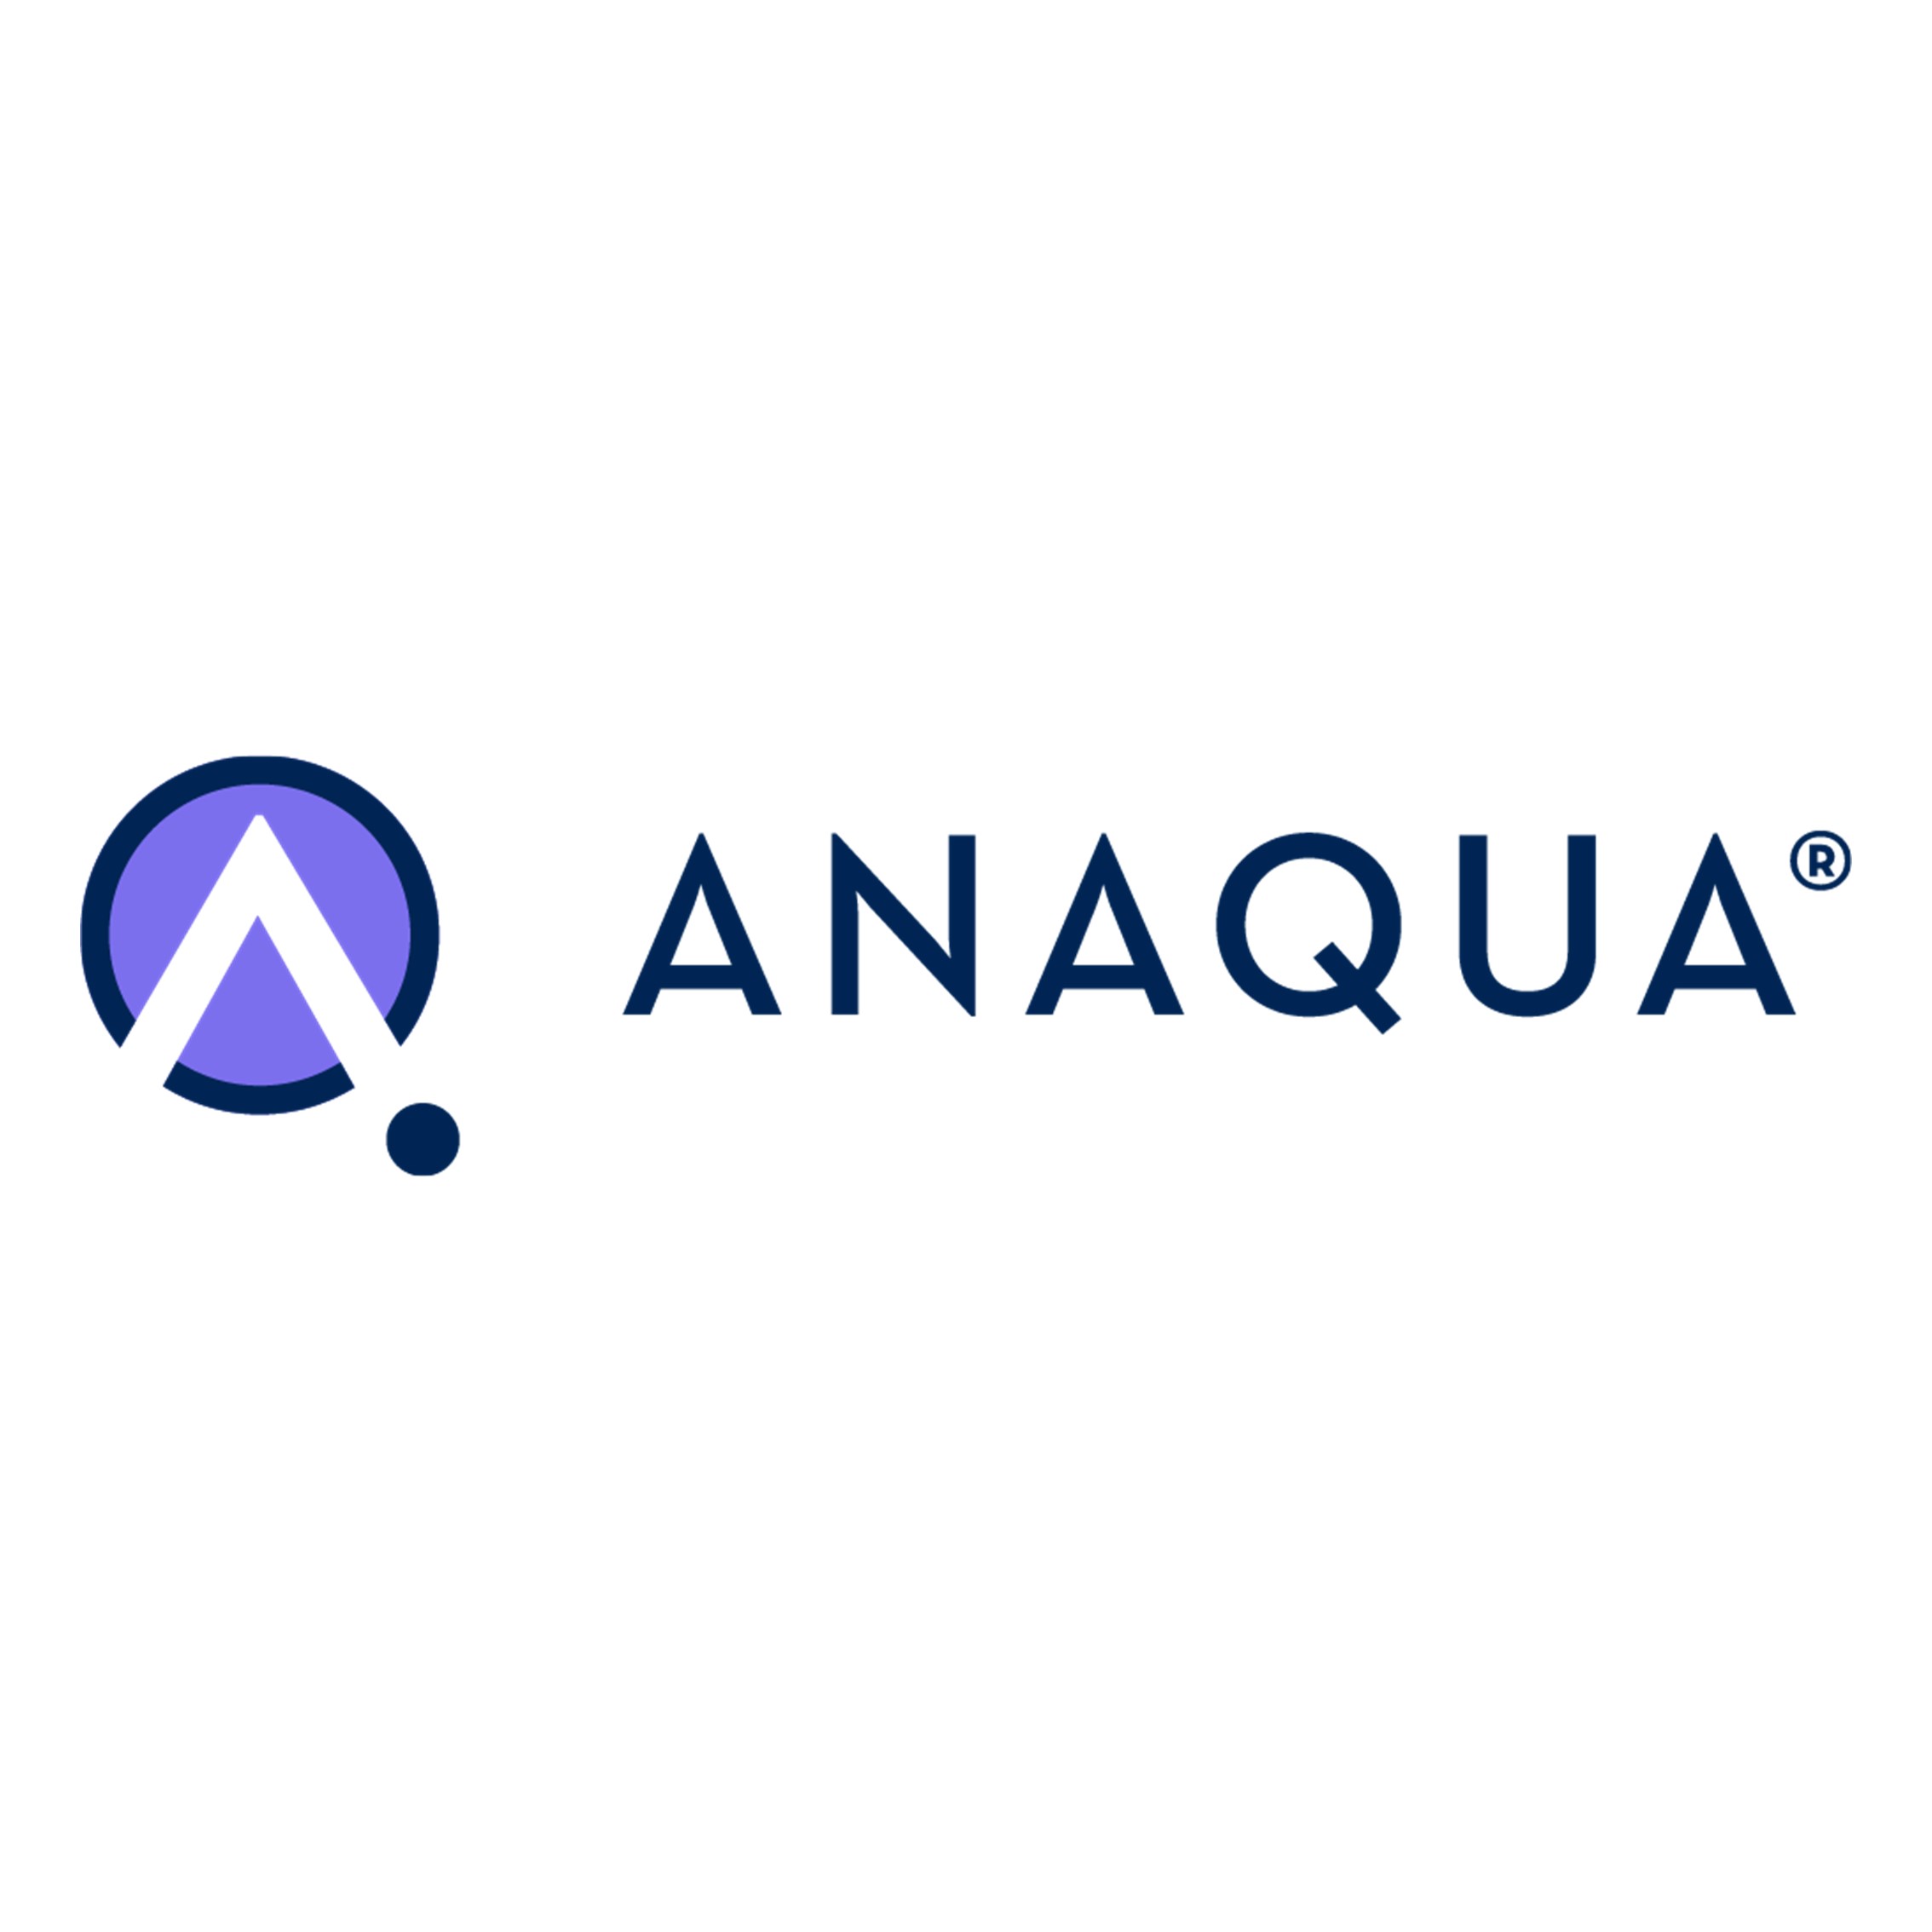 Anaqua